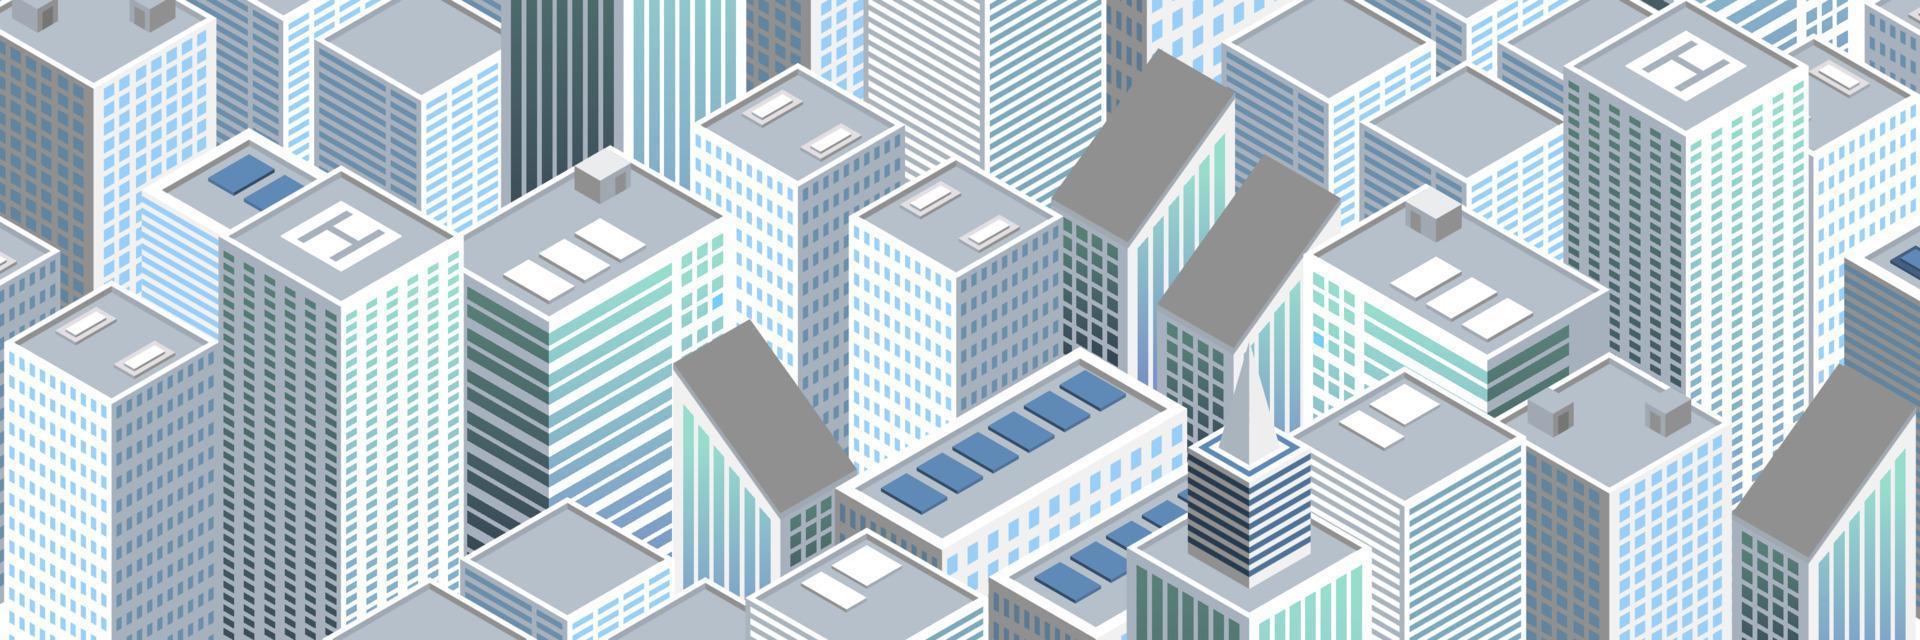 illustration vectorielle de ville futuriste isométrique. mégalopole urbaine isométrique vue de dessus de la ville et de l'architecture éléments 3d différents bâtiments vecteur